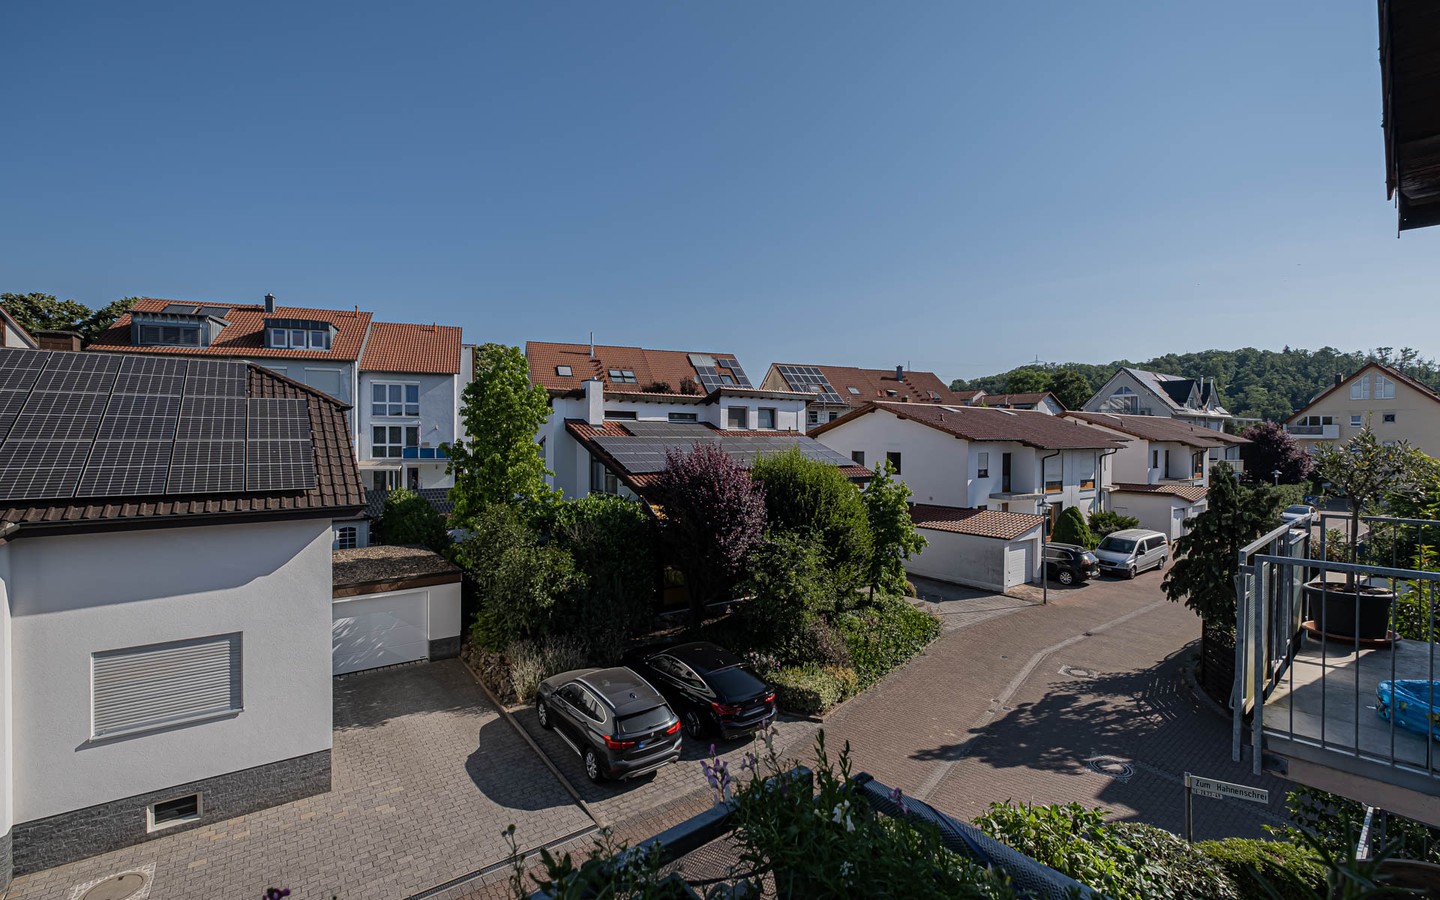 Aussicht Balkon - Hell-freundlich-gemütlich: Großzügige 3-Zimmerwohnung in Wiesloch